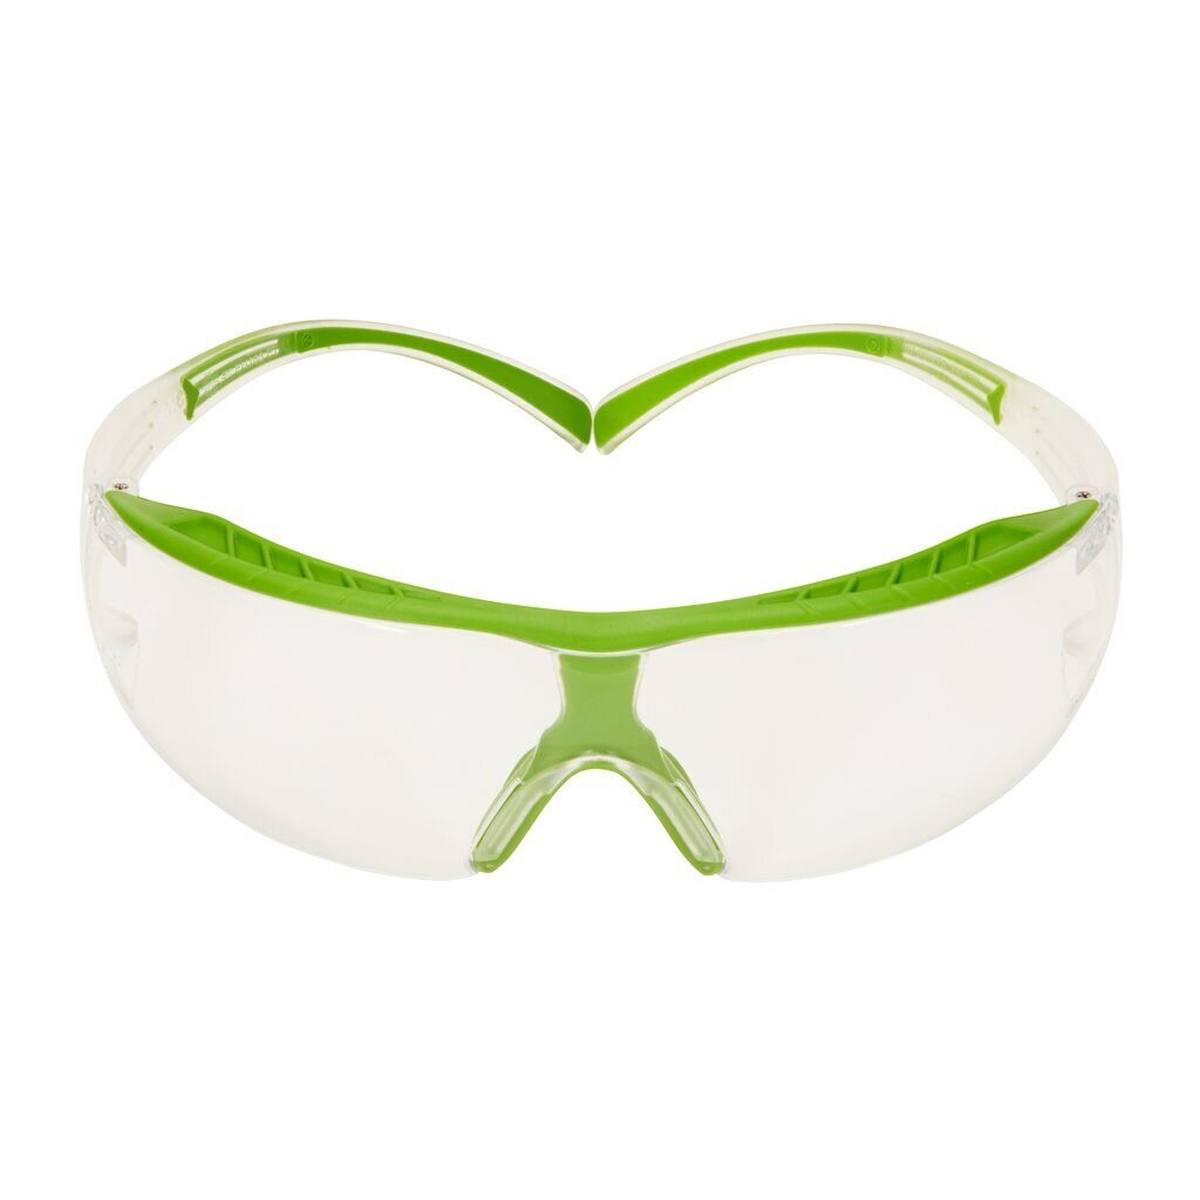 3M Gafas de protección SecureFit 400X, montura verde-transparente, revestimiento antivaho Scotchgard (K/N), lente transparente, SF401XSGAF-GRN